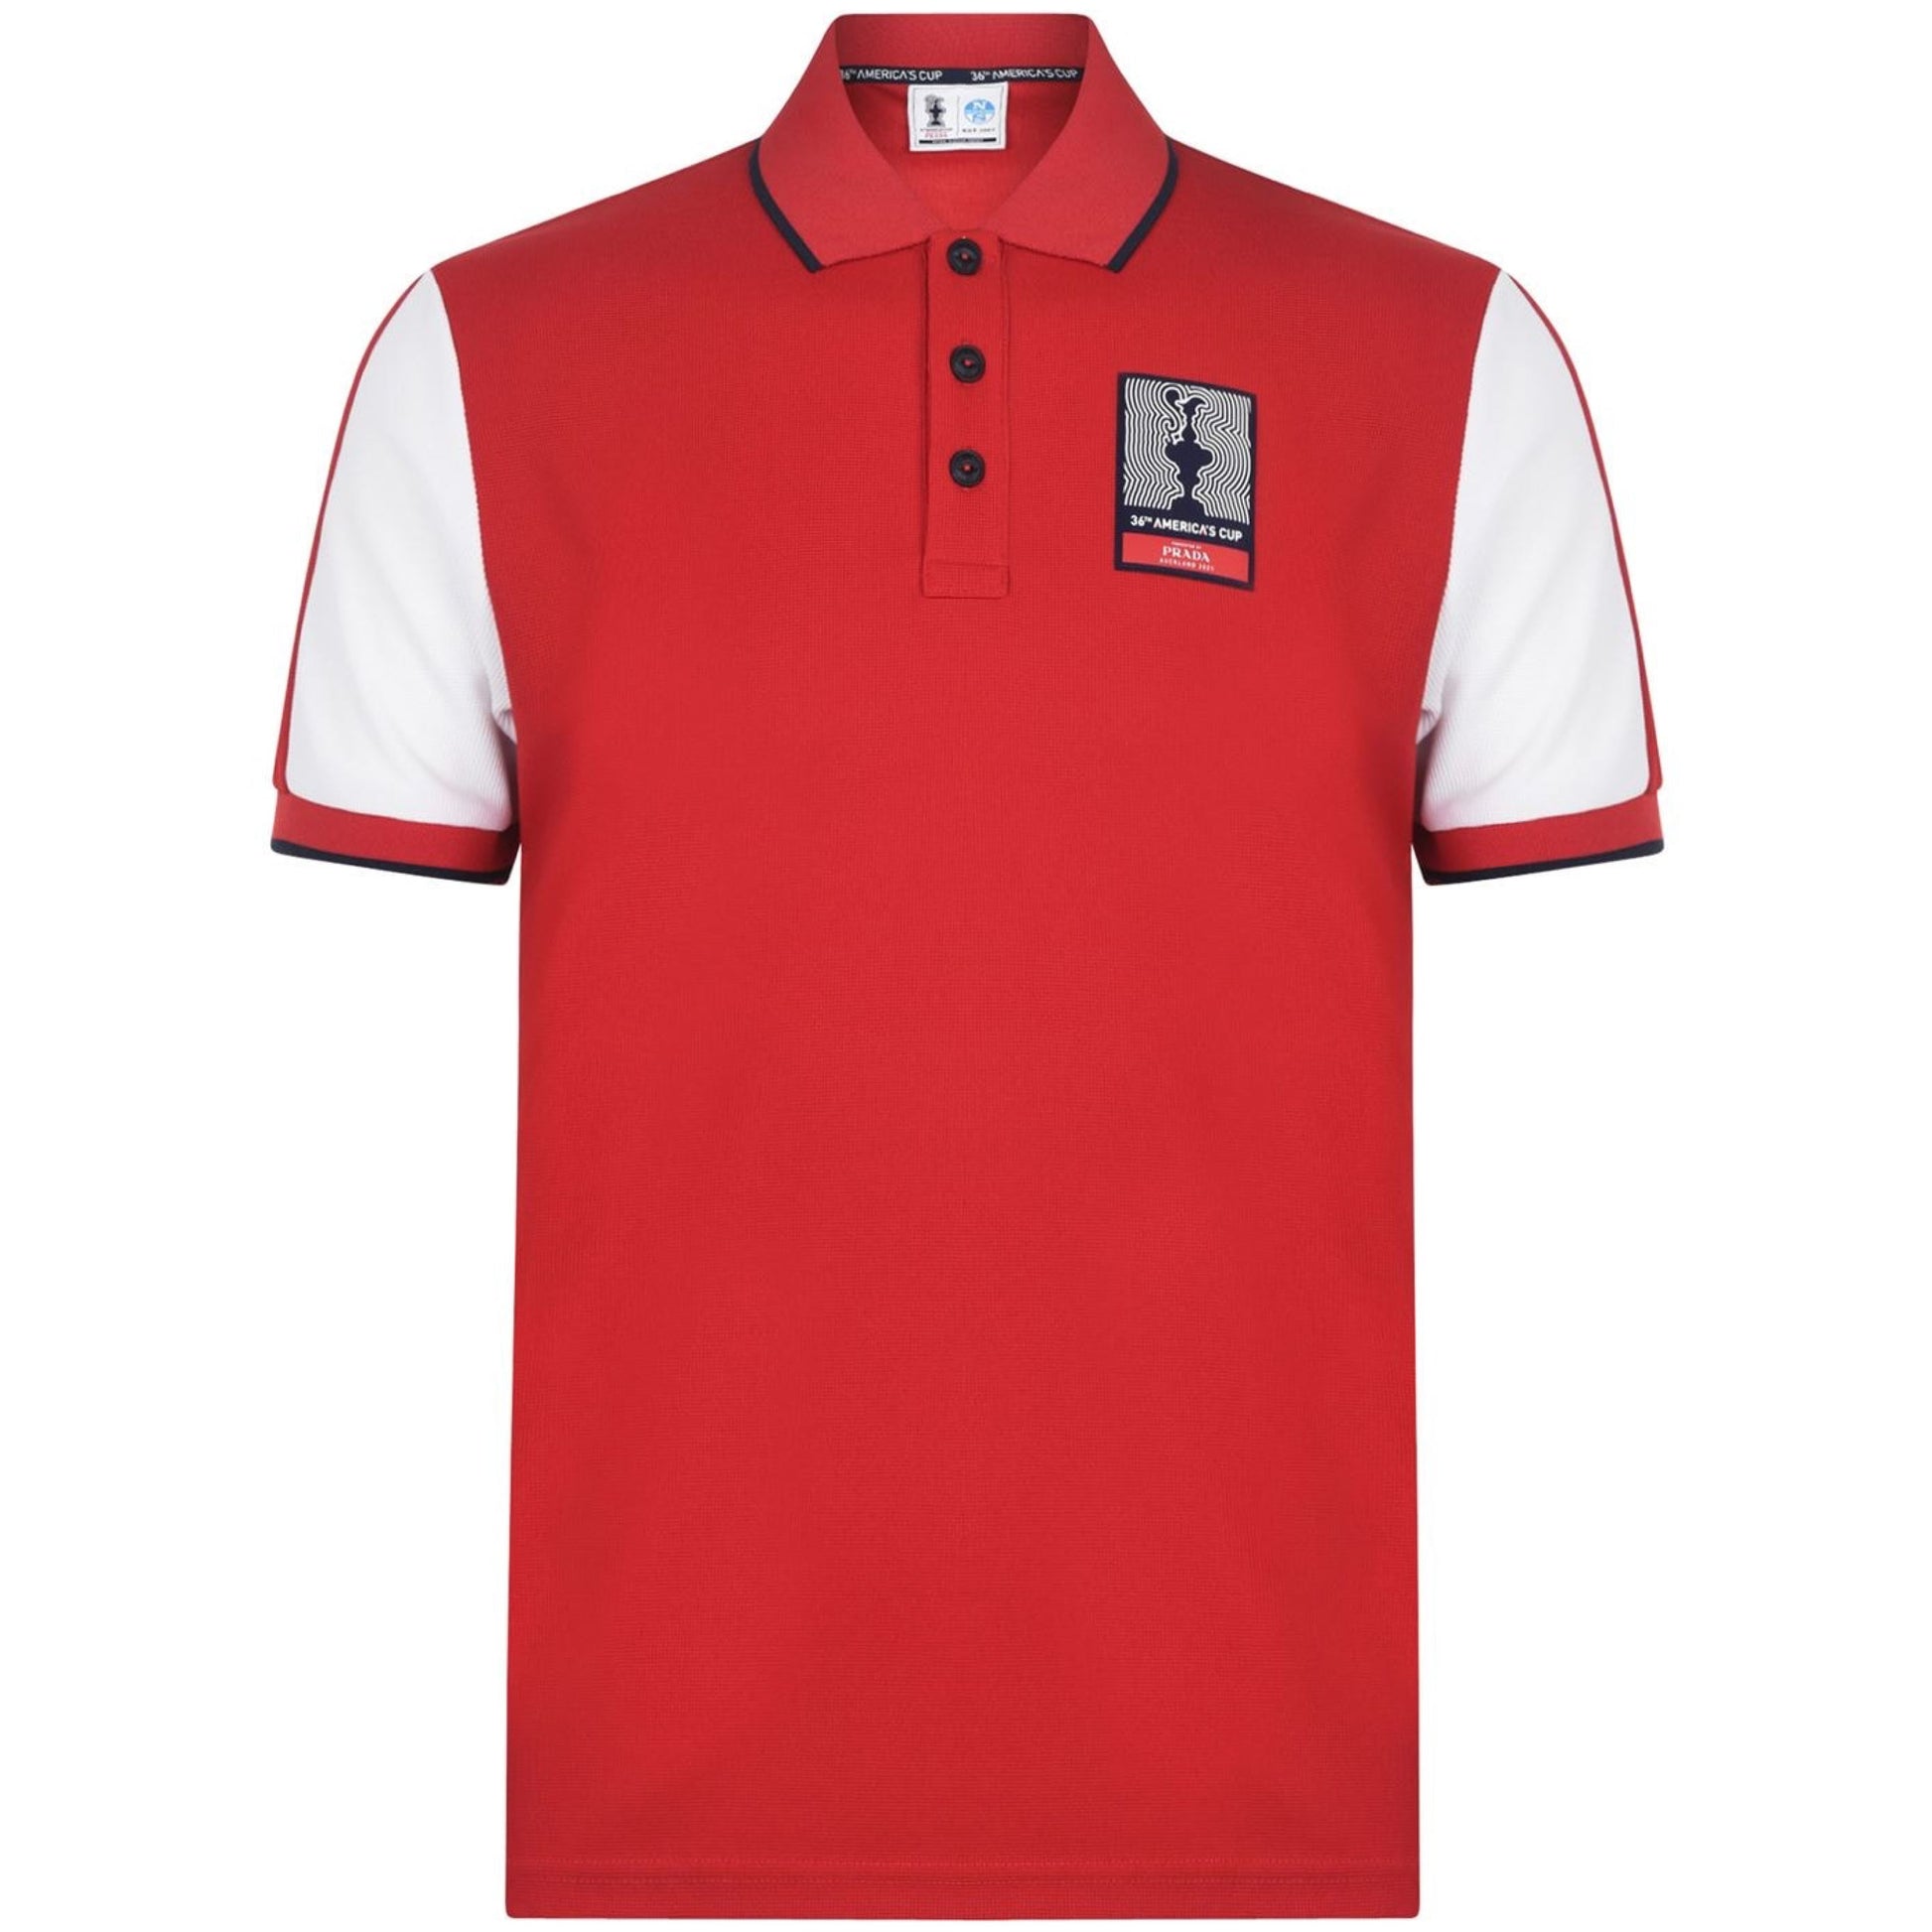 Prada x North Sails Red Polo Shirt Polo Shirt Prada 